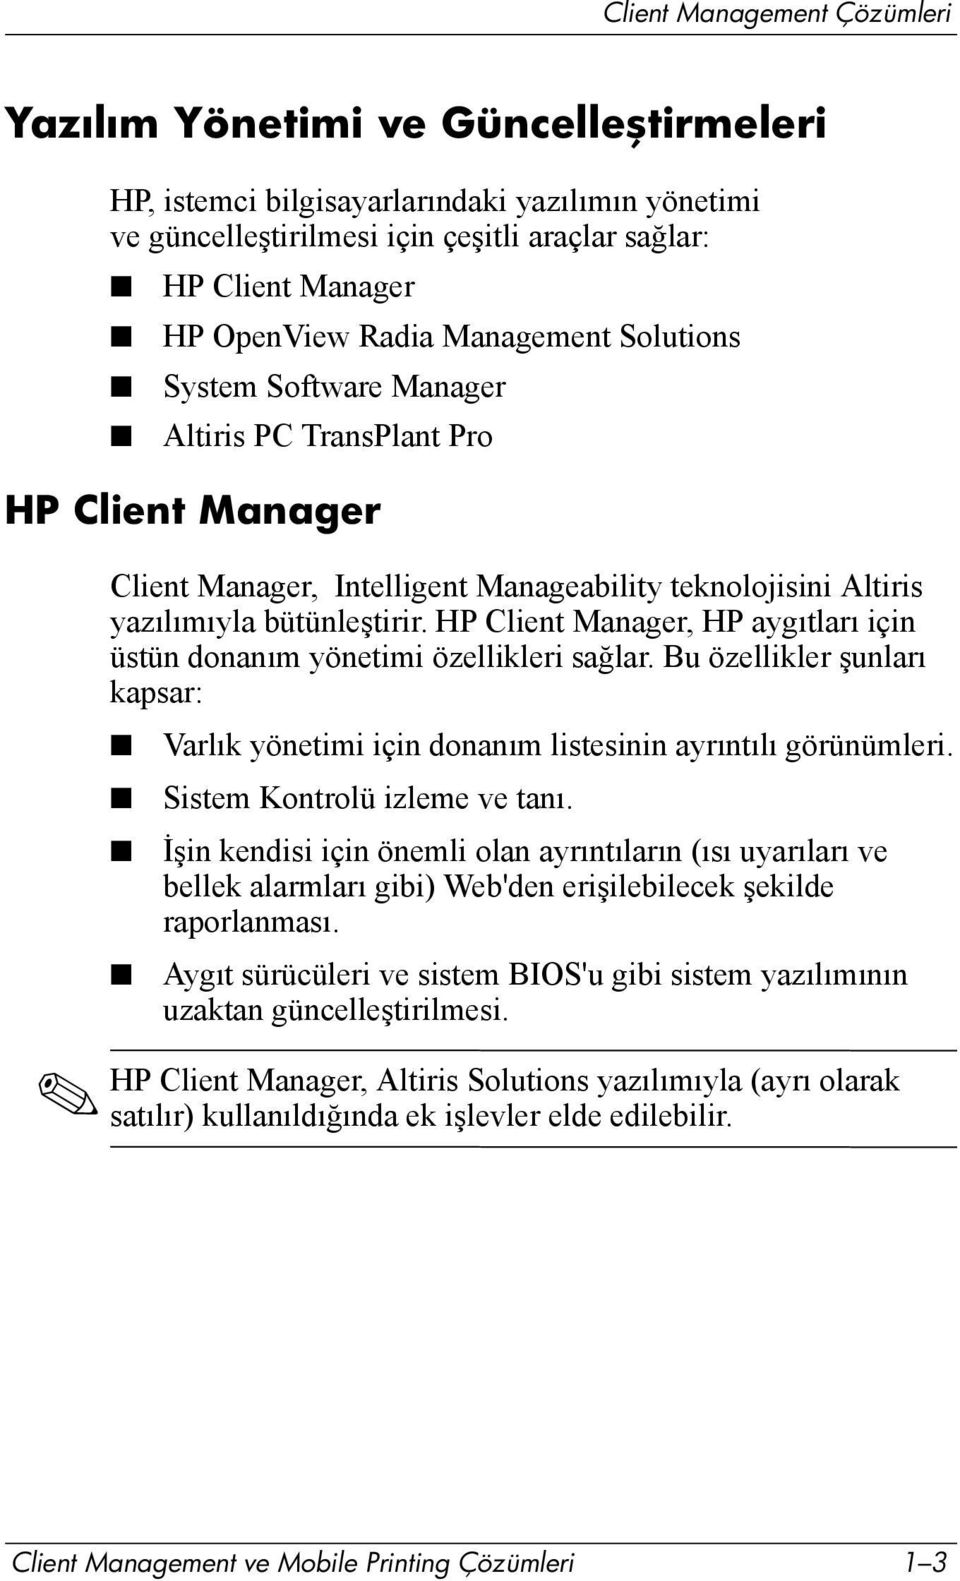 HP Client Manager, HP aygõtlarõ için üstün donanõm yönetimi özellikleri sağlar. Bu özellikler şunlarõ kapsar: Varlõk yönetimi için donanõm listesinin ayrõntõlõ görünümleri.